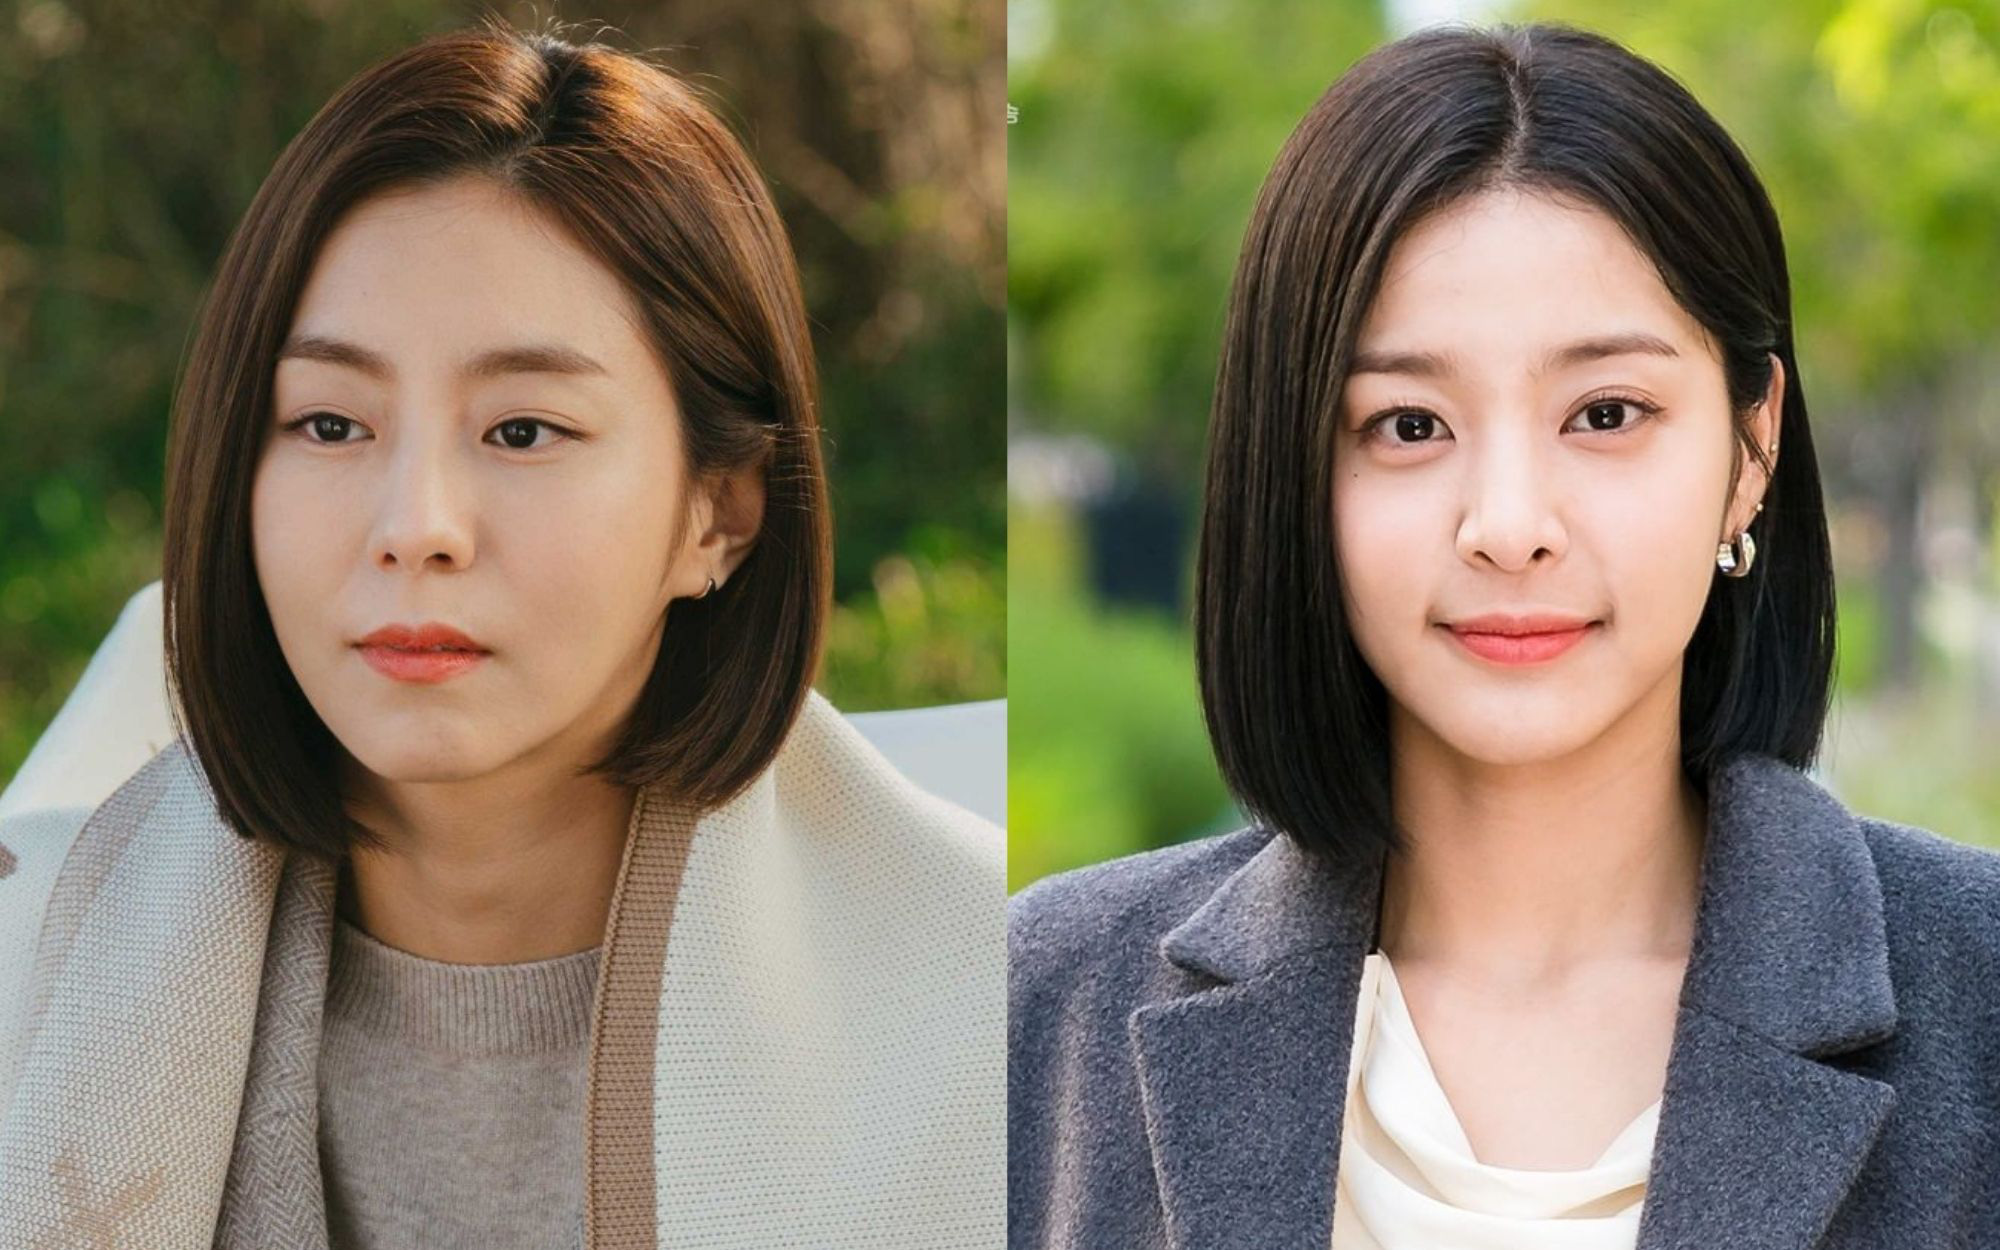 Nếu bạn muốn sở hữu một kiểu tóc ngắn đẹp U40 giống như các nữ diễn viên trong phim Hàn thì hãy đến ngay với chúng tôi. Chúng tôi sẽ đưa bạn đến cùng với những kiểu tóc ngắn đẹp và đầy phong cách nhất của các ngôi sao trong phim Hàn.